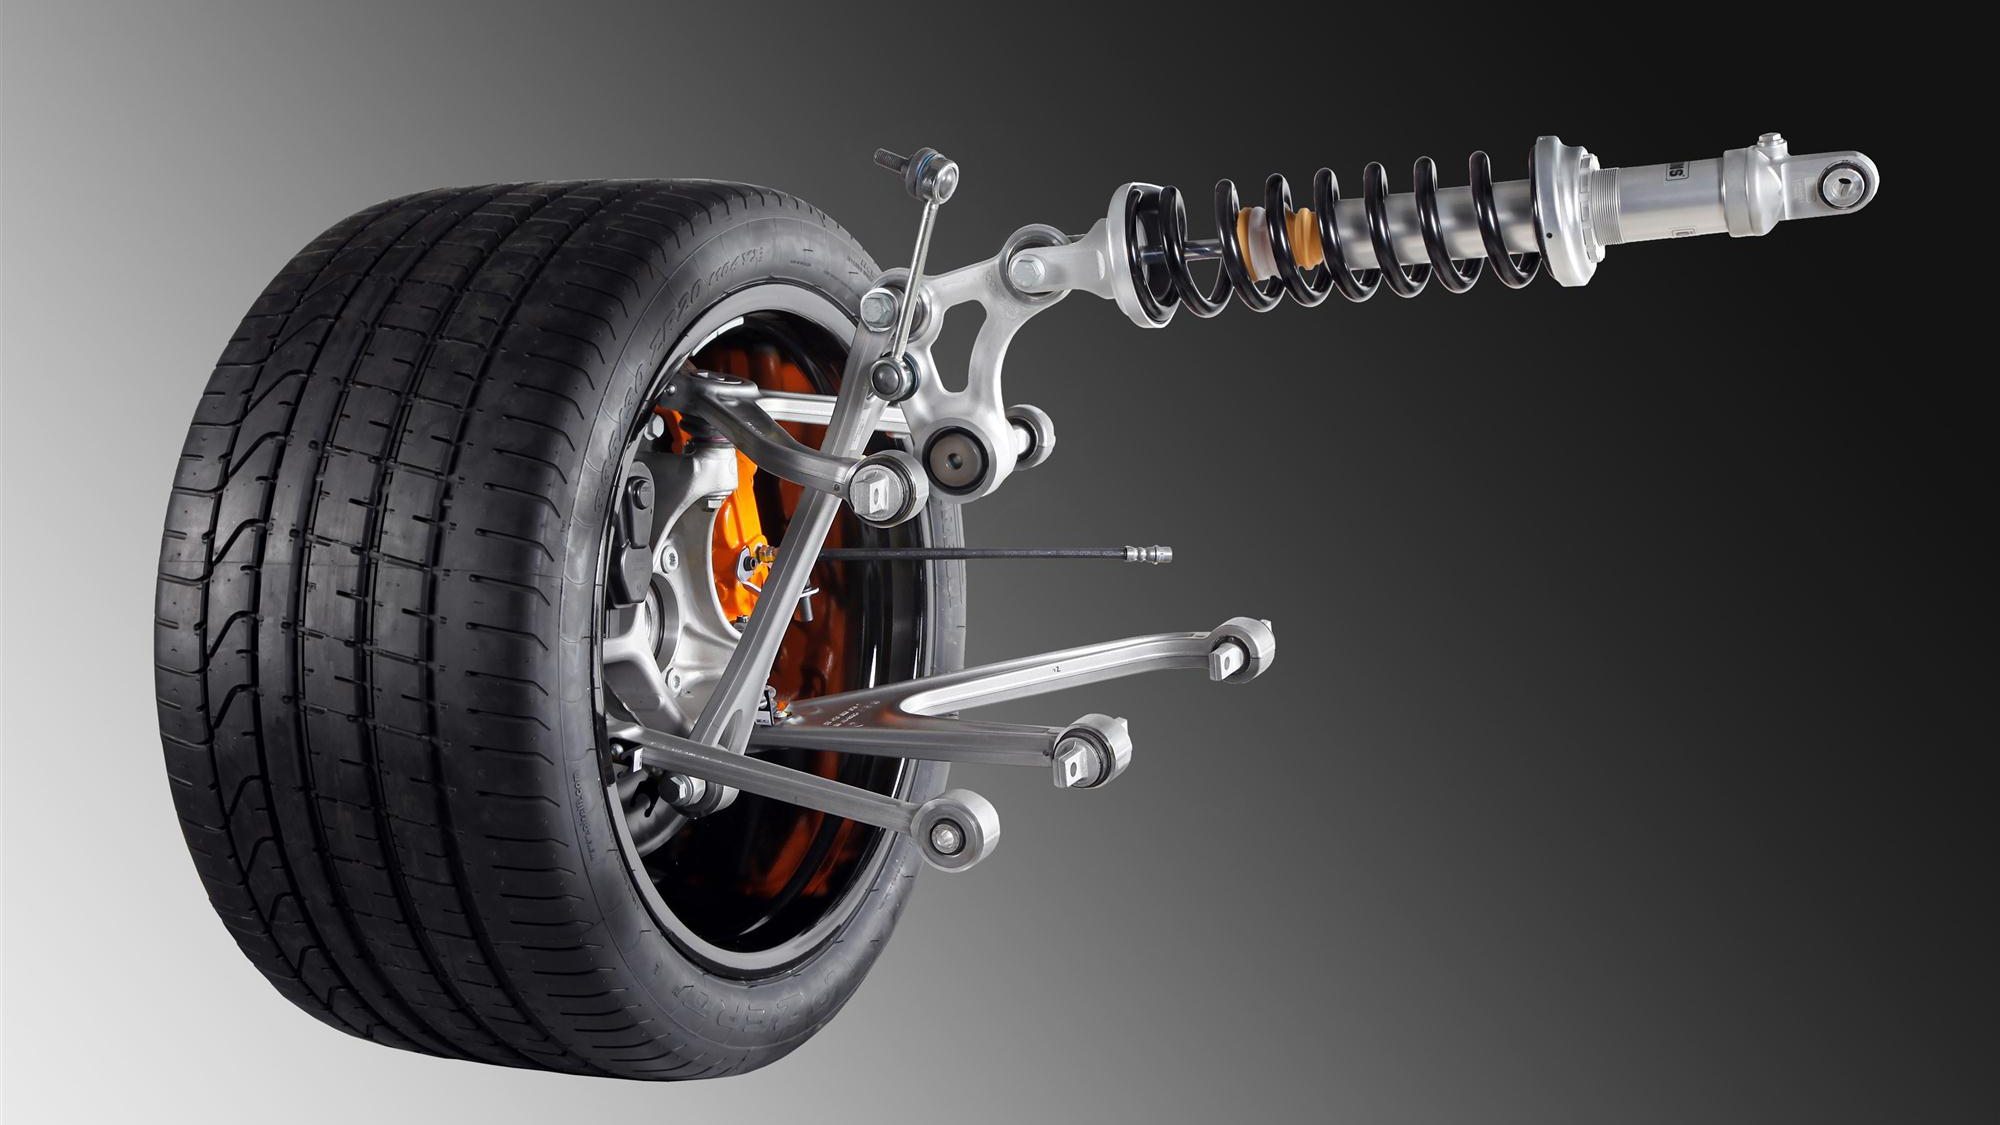 Lamborghini pushrod suspension for Murcielago replacement